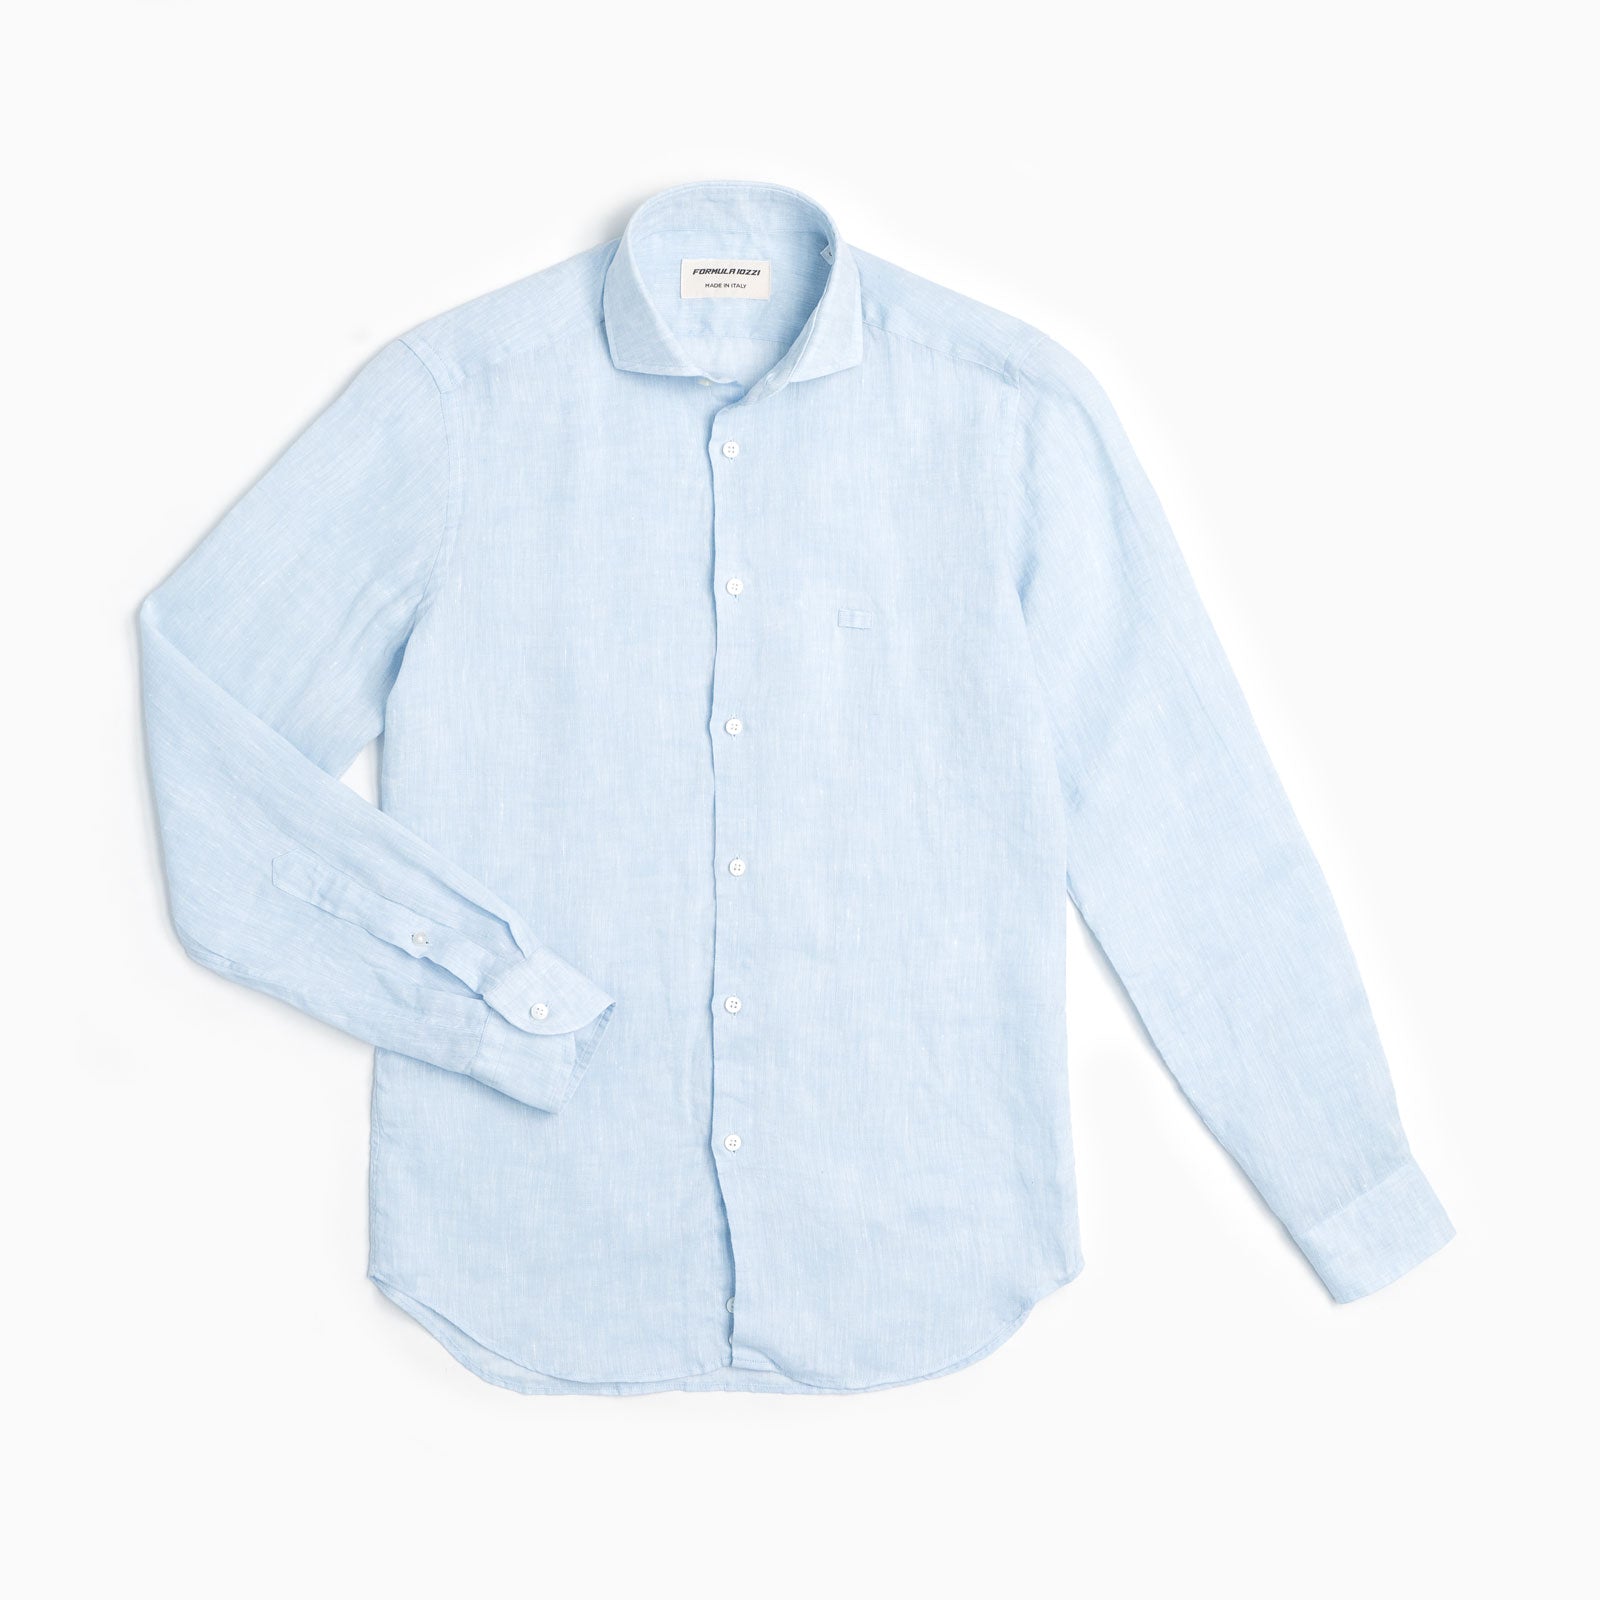 100% Linen Shirt - Light Blue